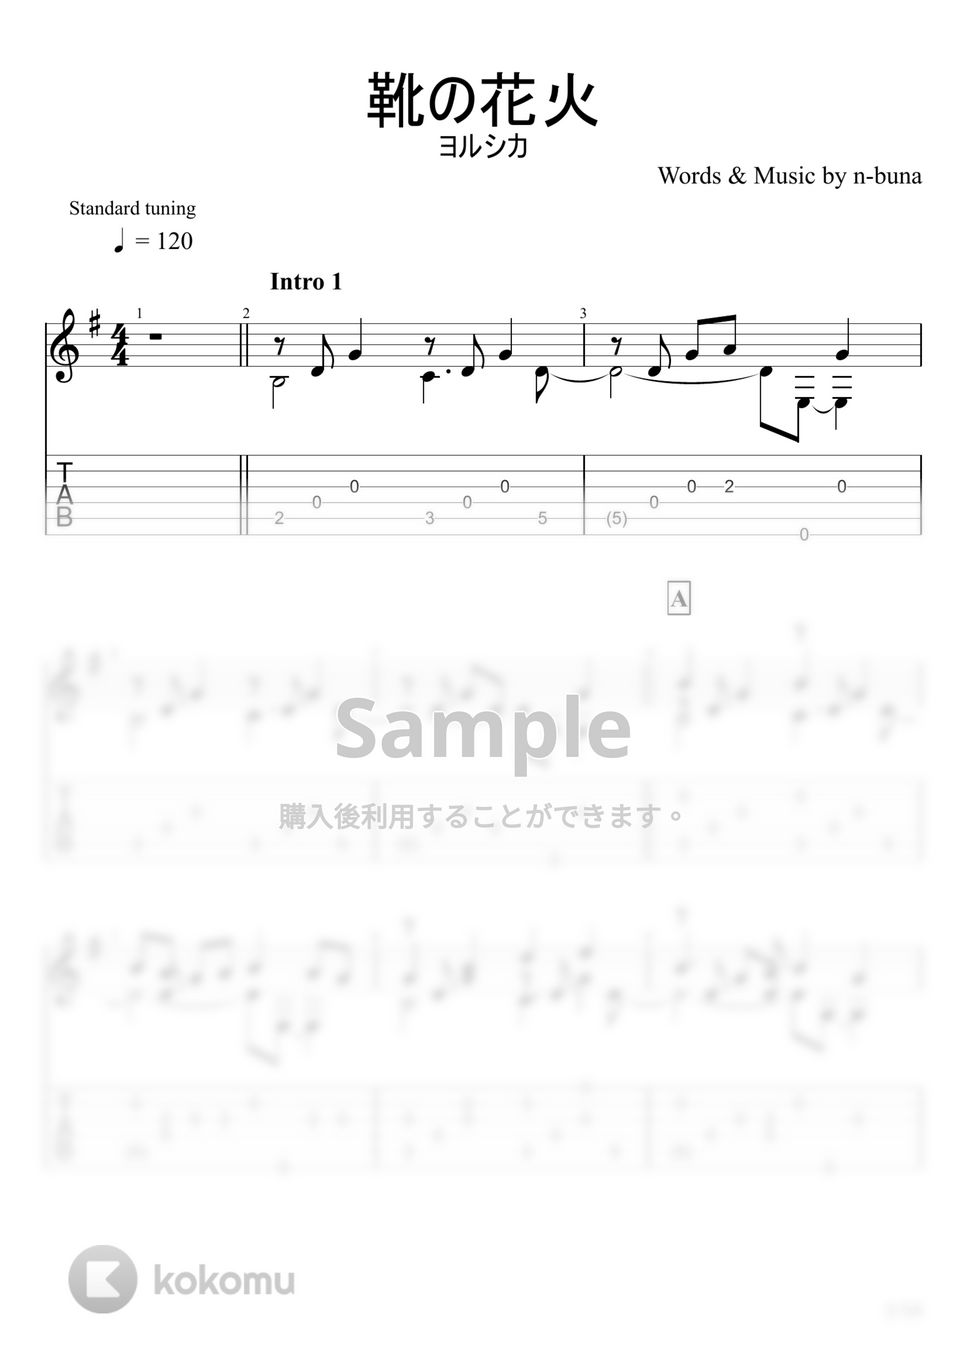 ヨルシカ - 靴の花火 (ソロギター) by u3danchou